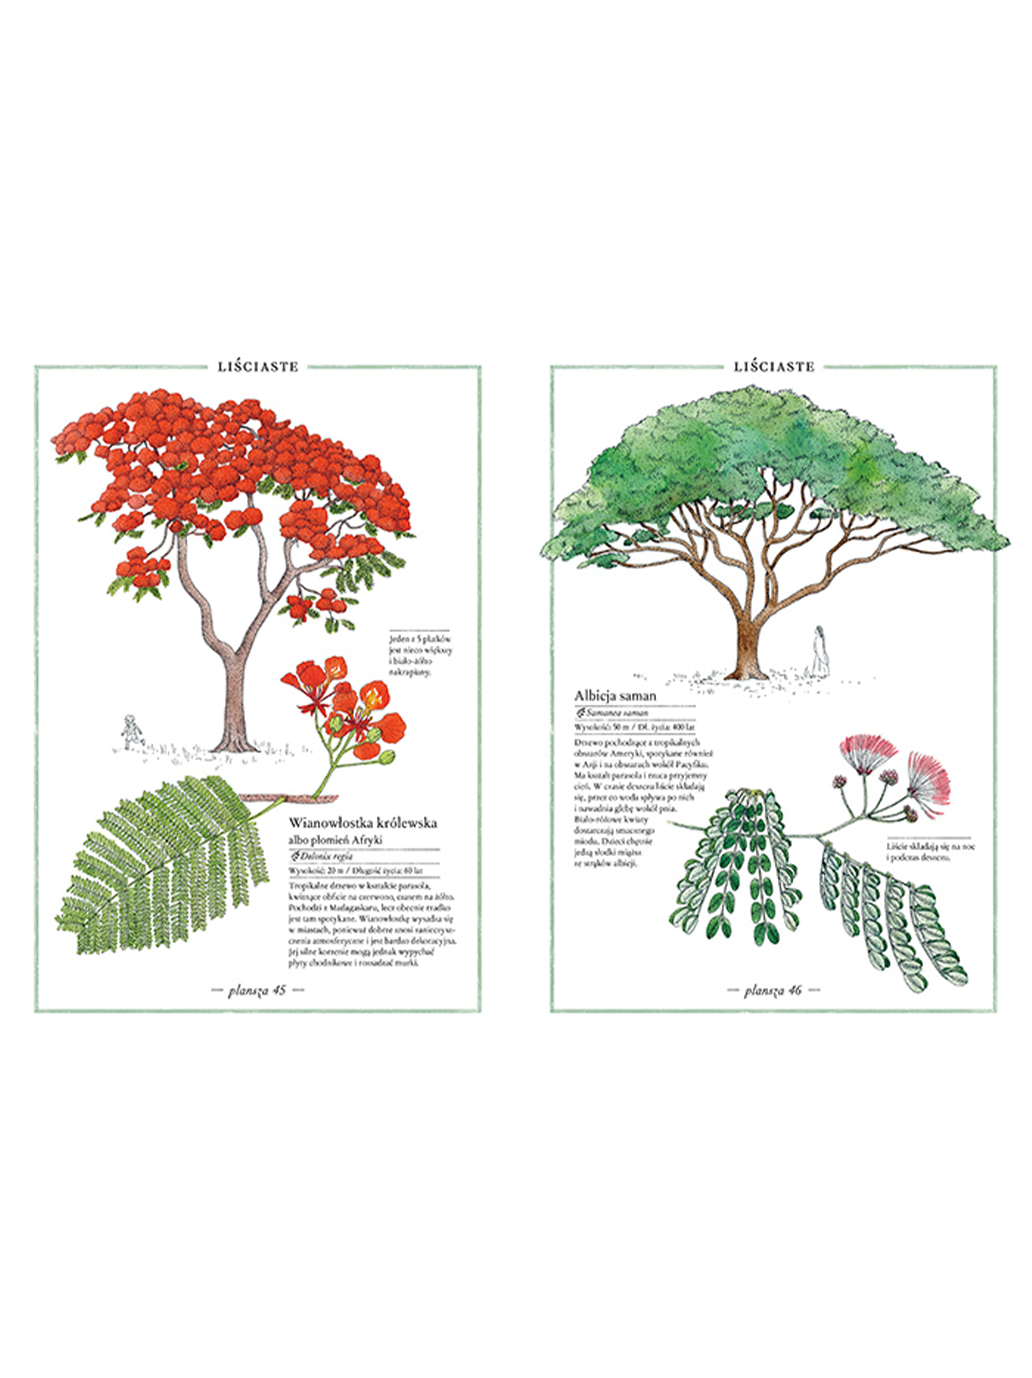 Illustrierter Baumbestand